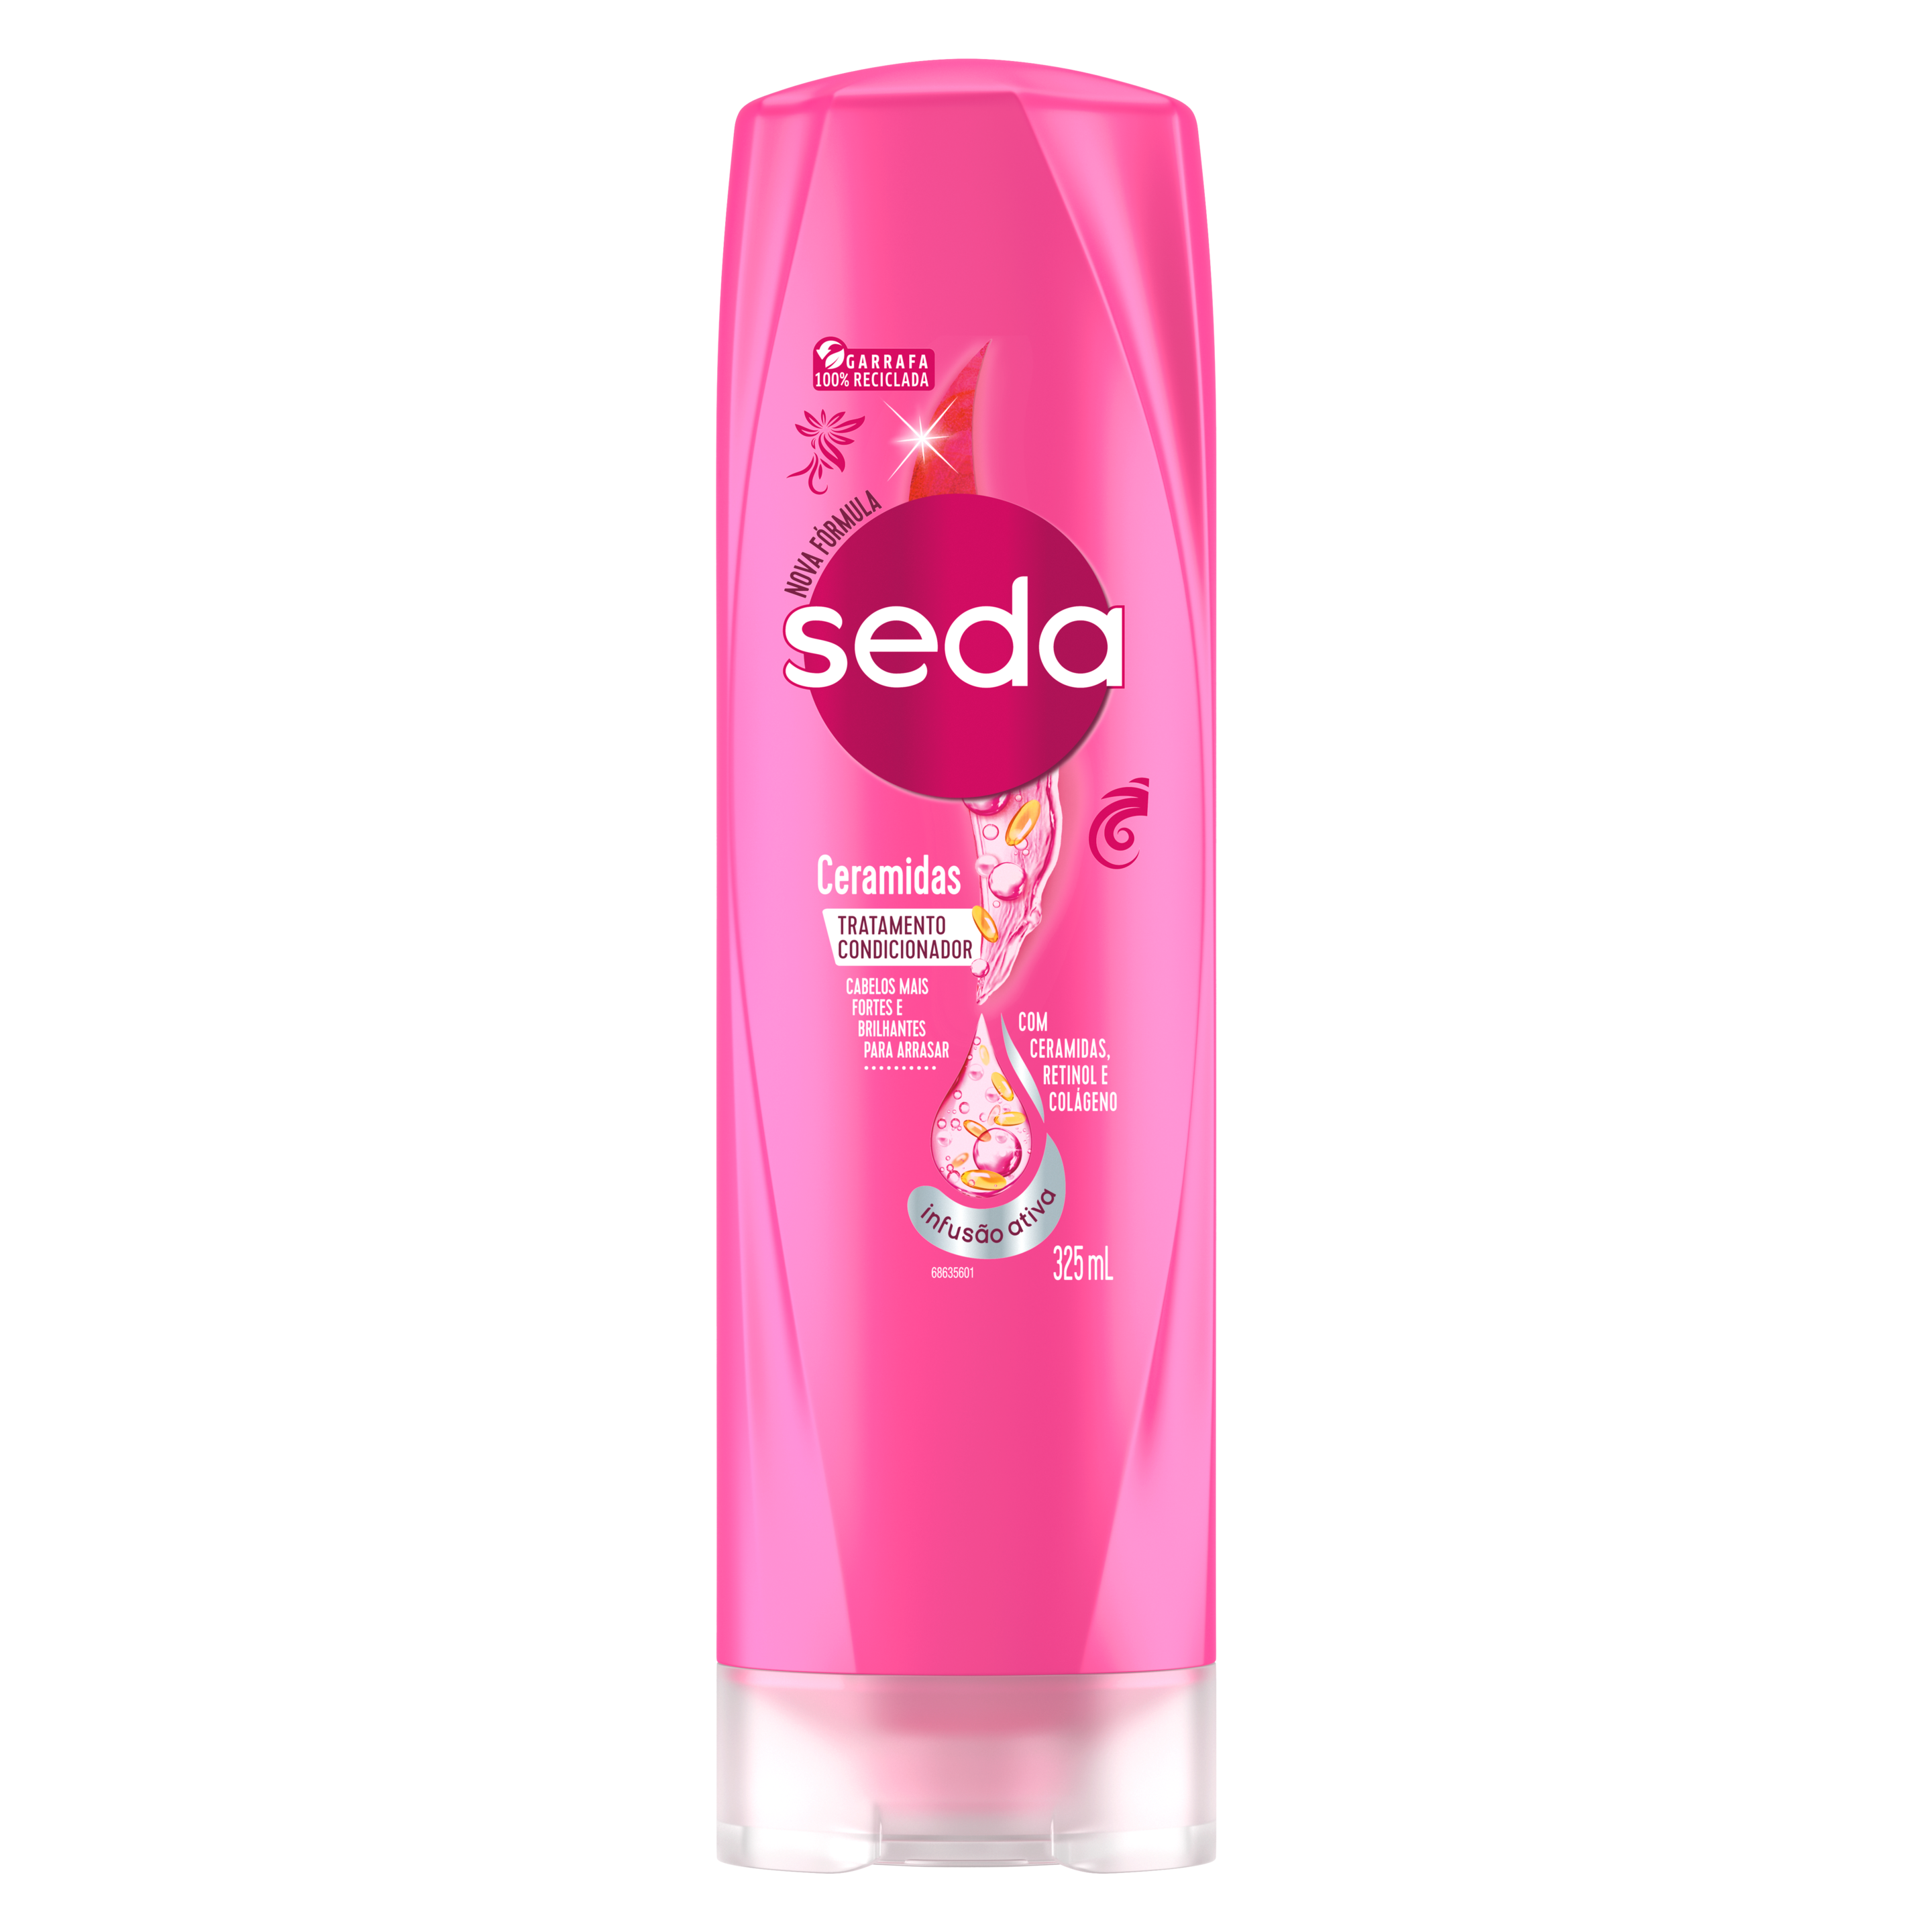 Uma imagem frontal da embalagem de Shampoo Seda Ceramidas 325ml